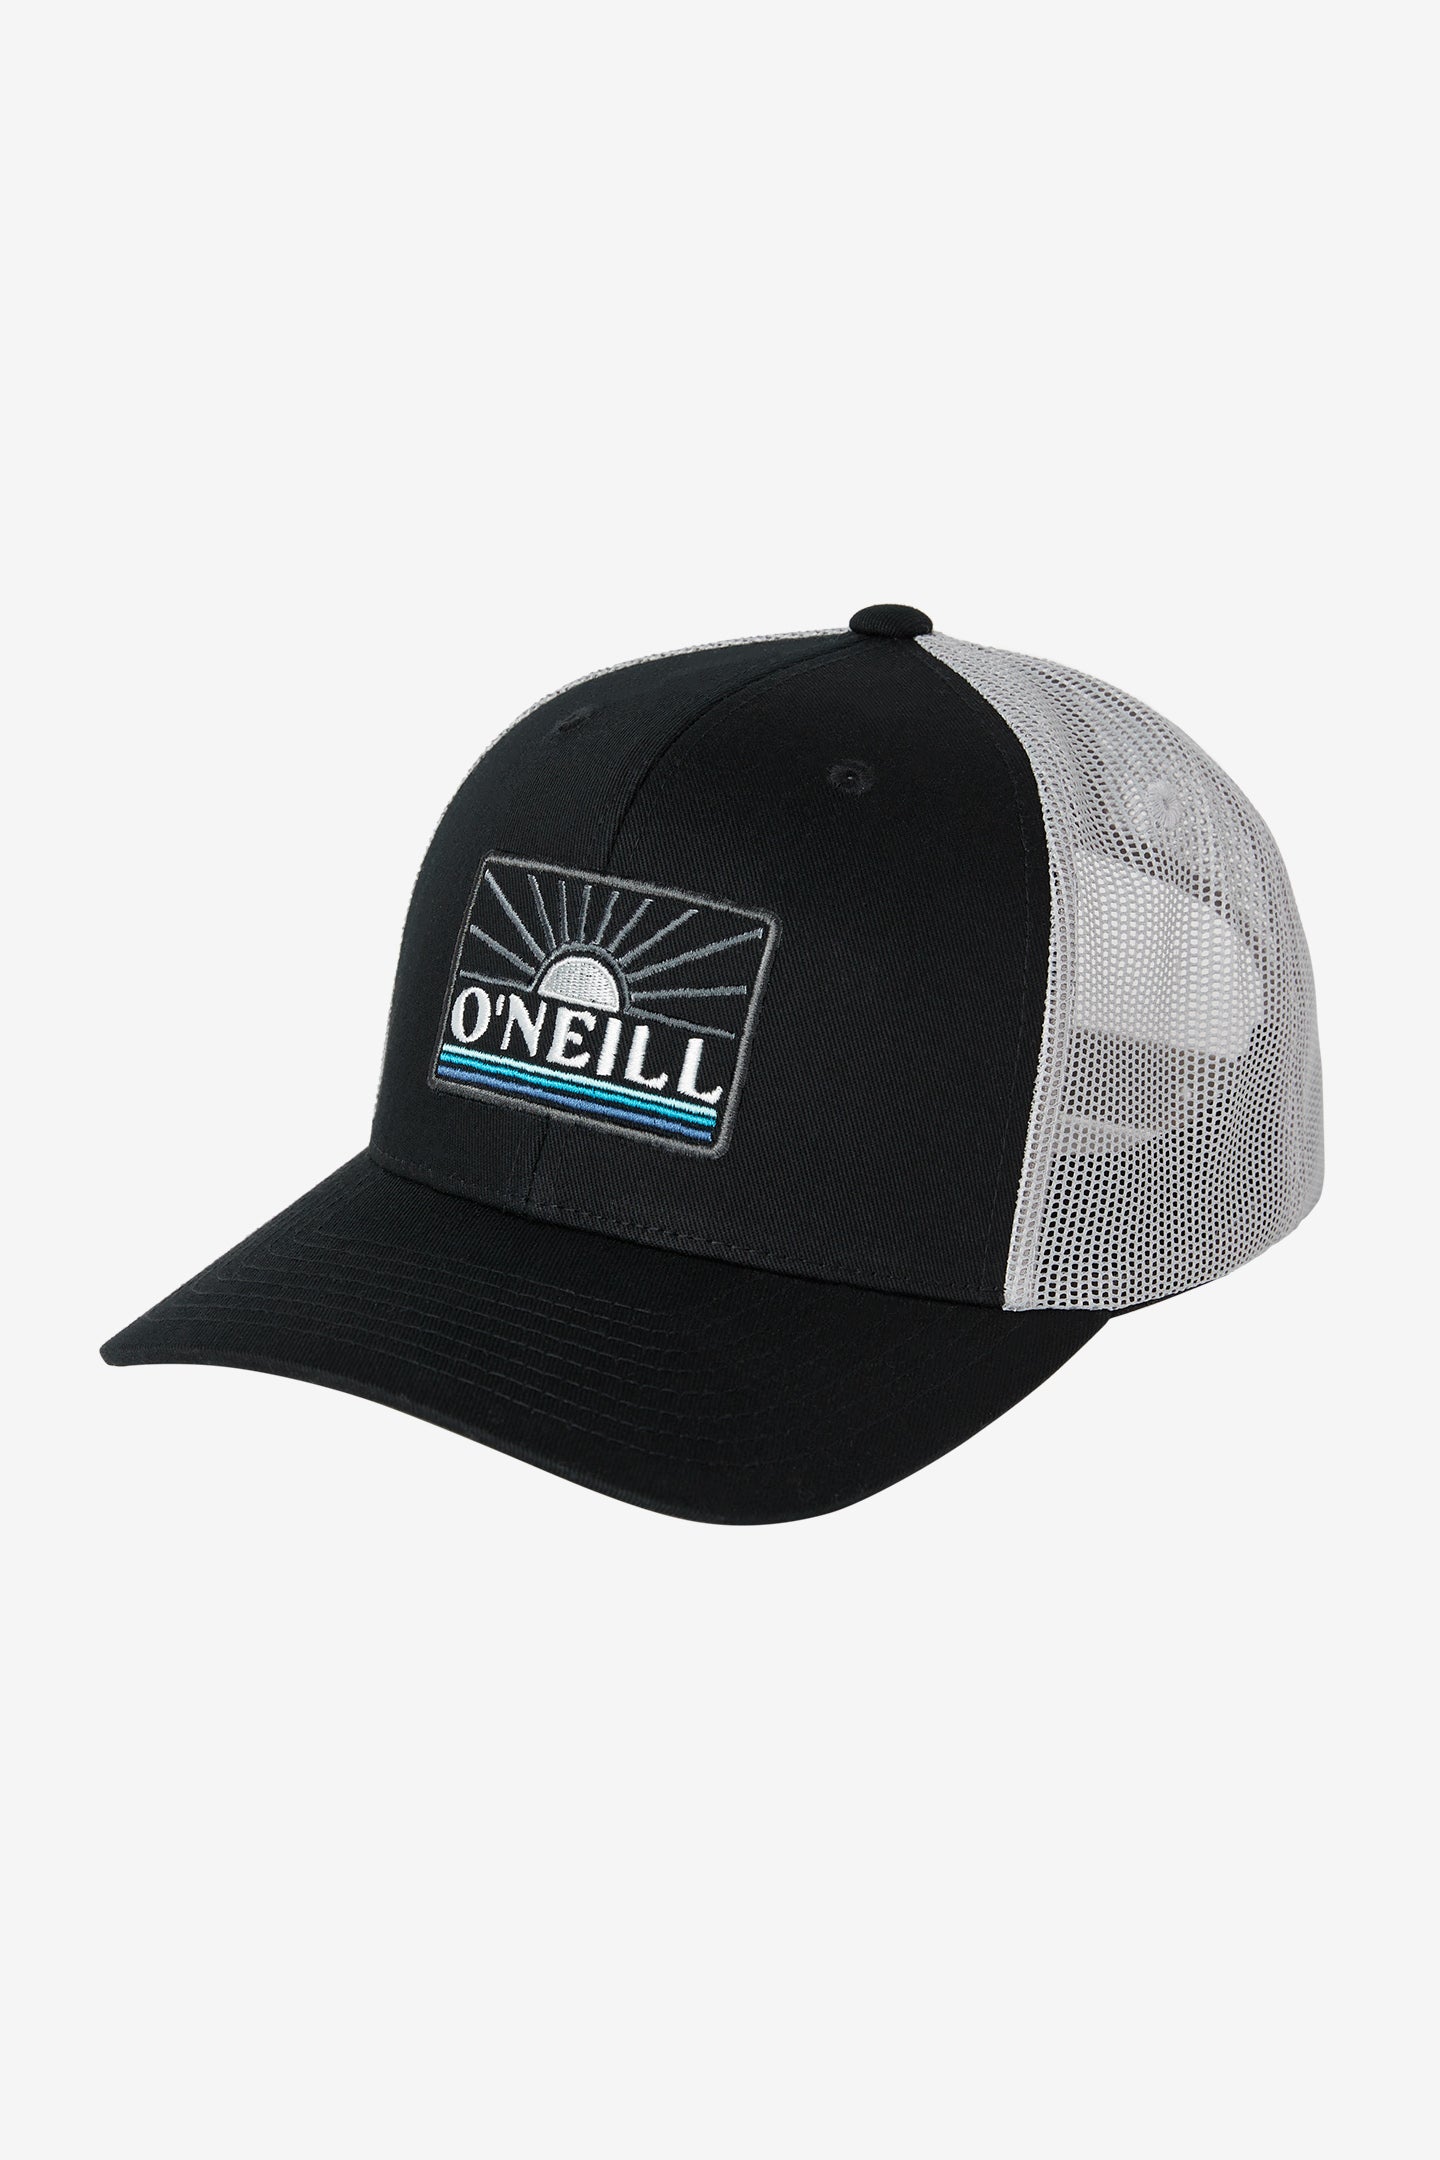 O'Neill Headquarters Men's Trucker Hat, Black